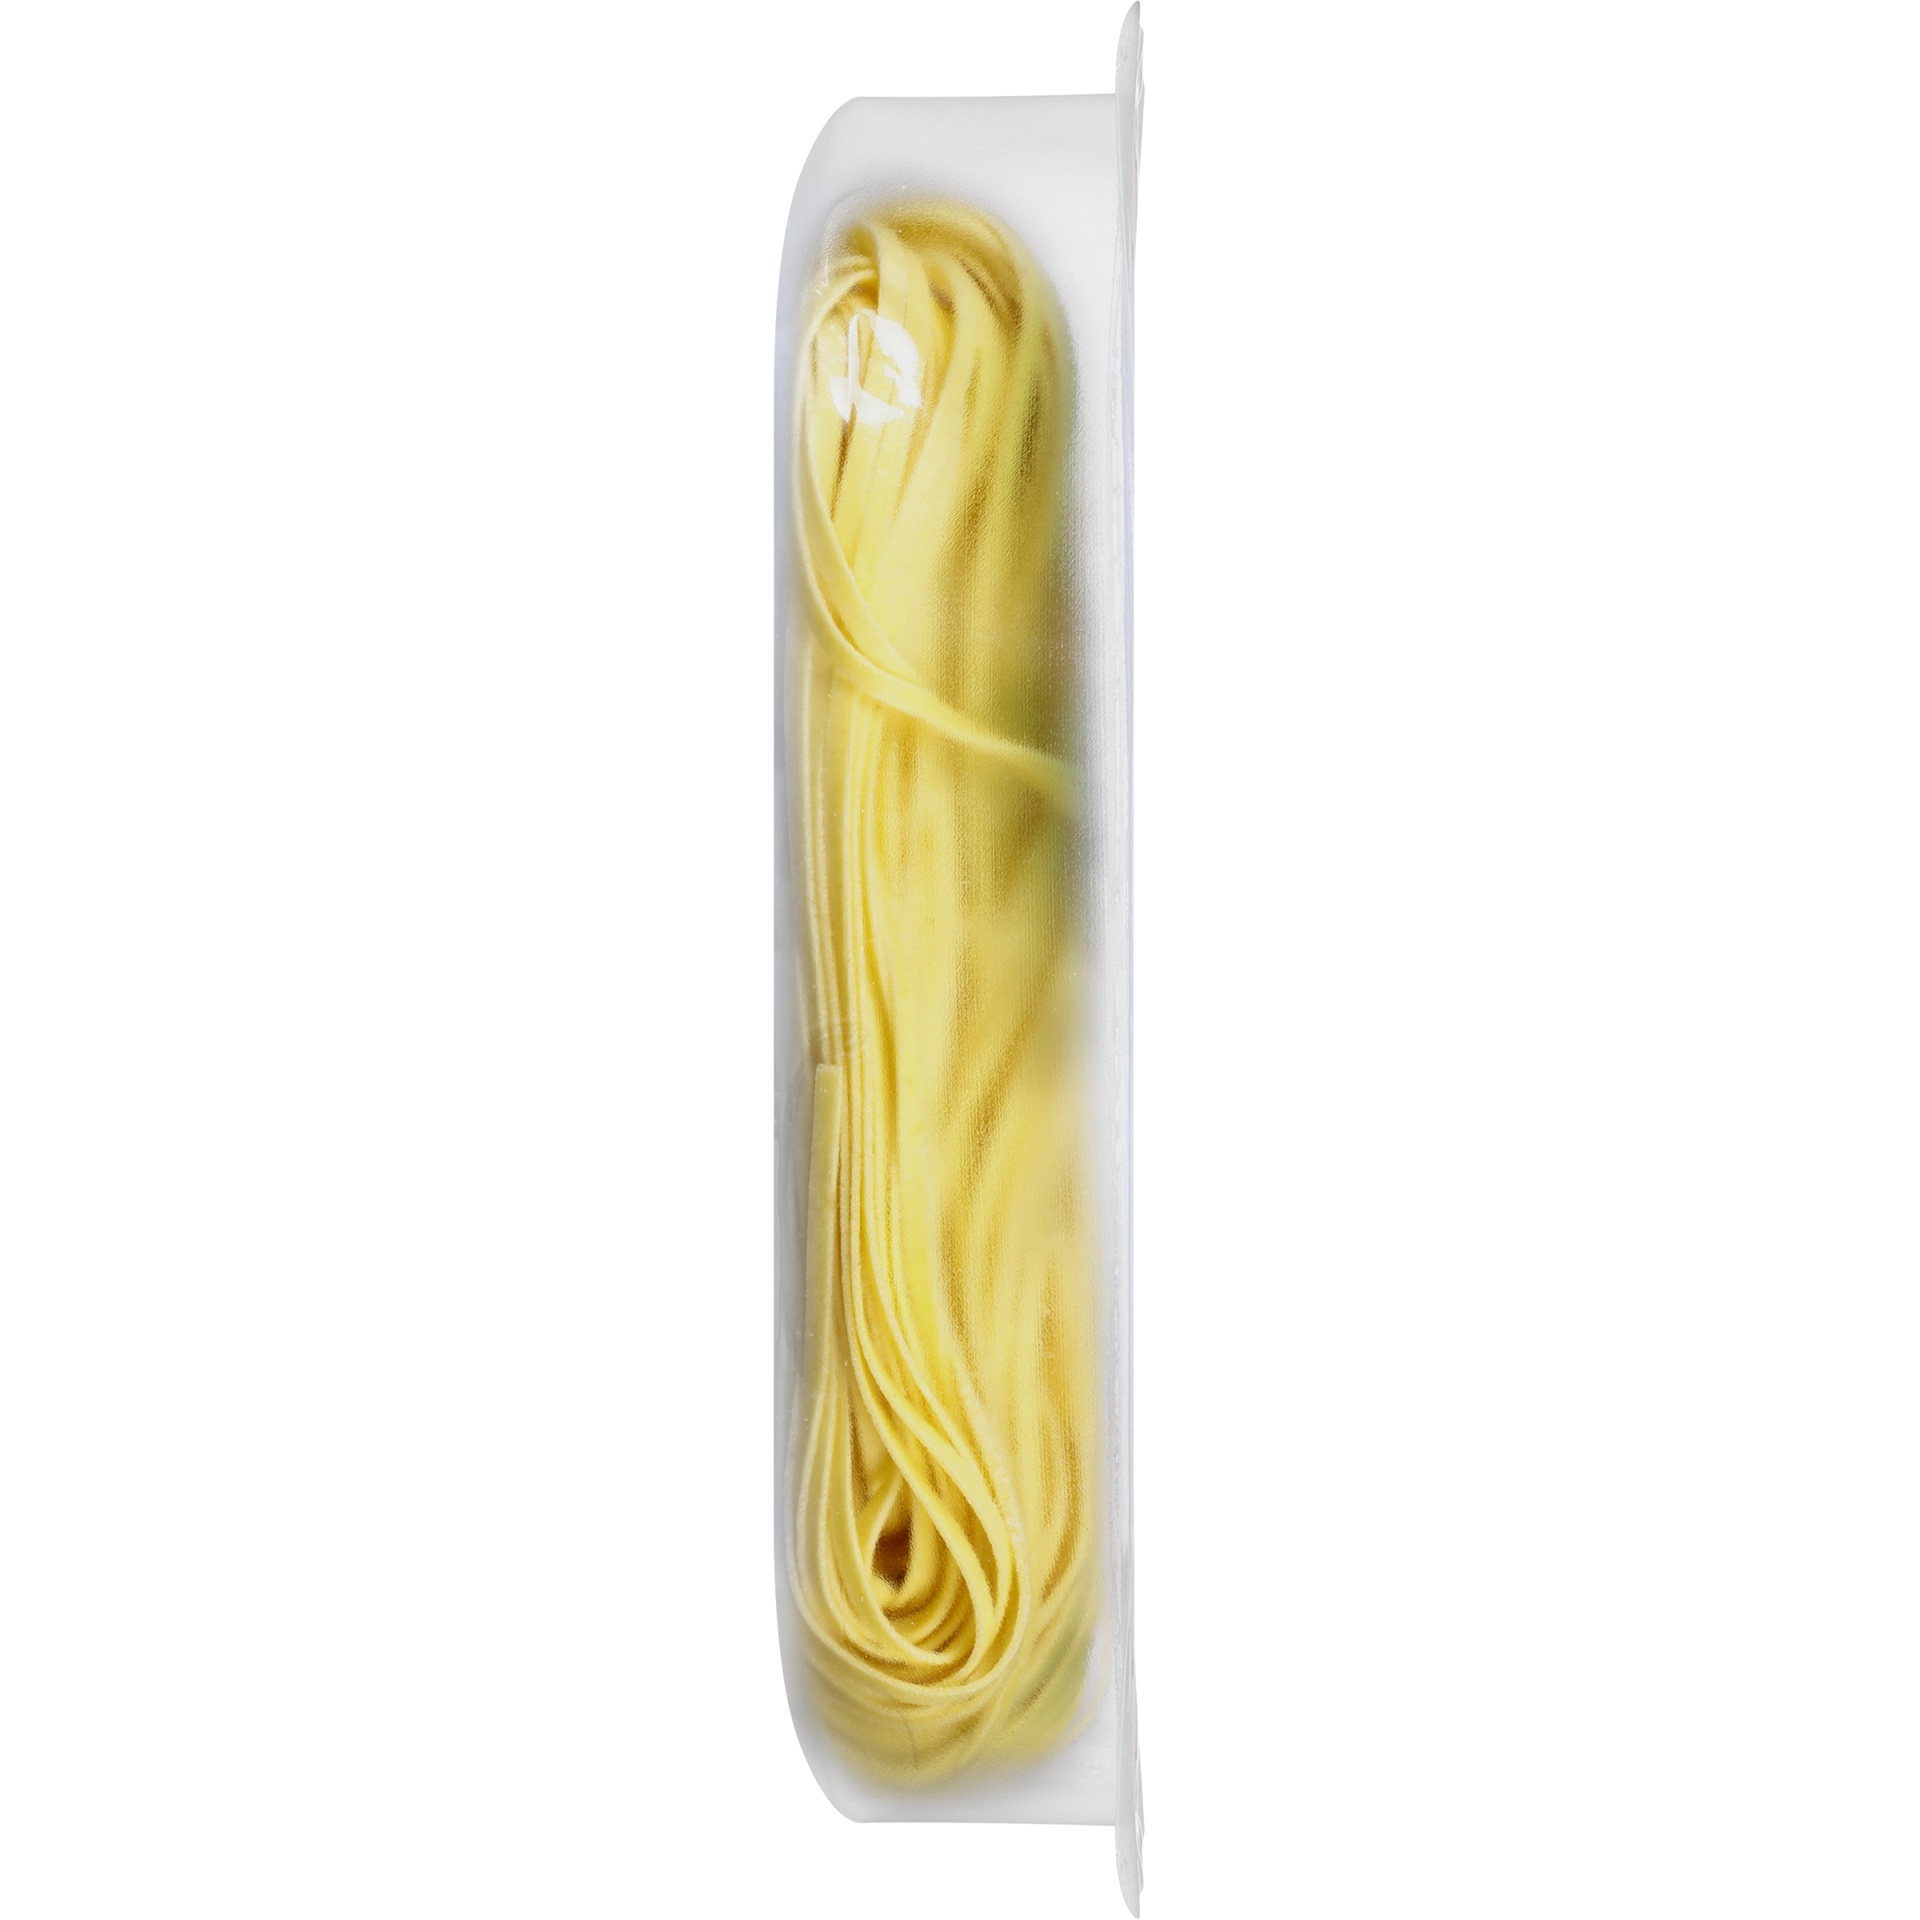 slide 2 of 6, Buitoni Linguine, Refrigerated Pasta Noodles, 9 oz Package, 9 oz